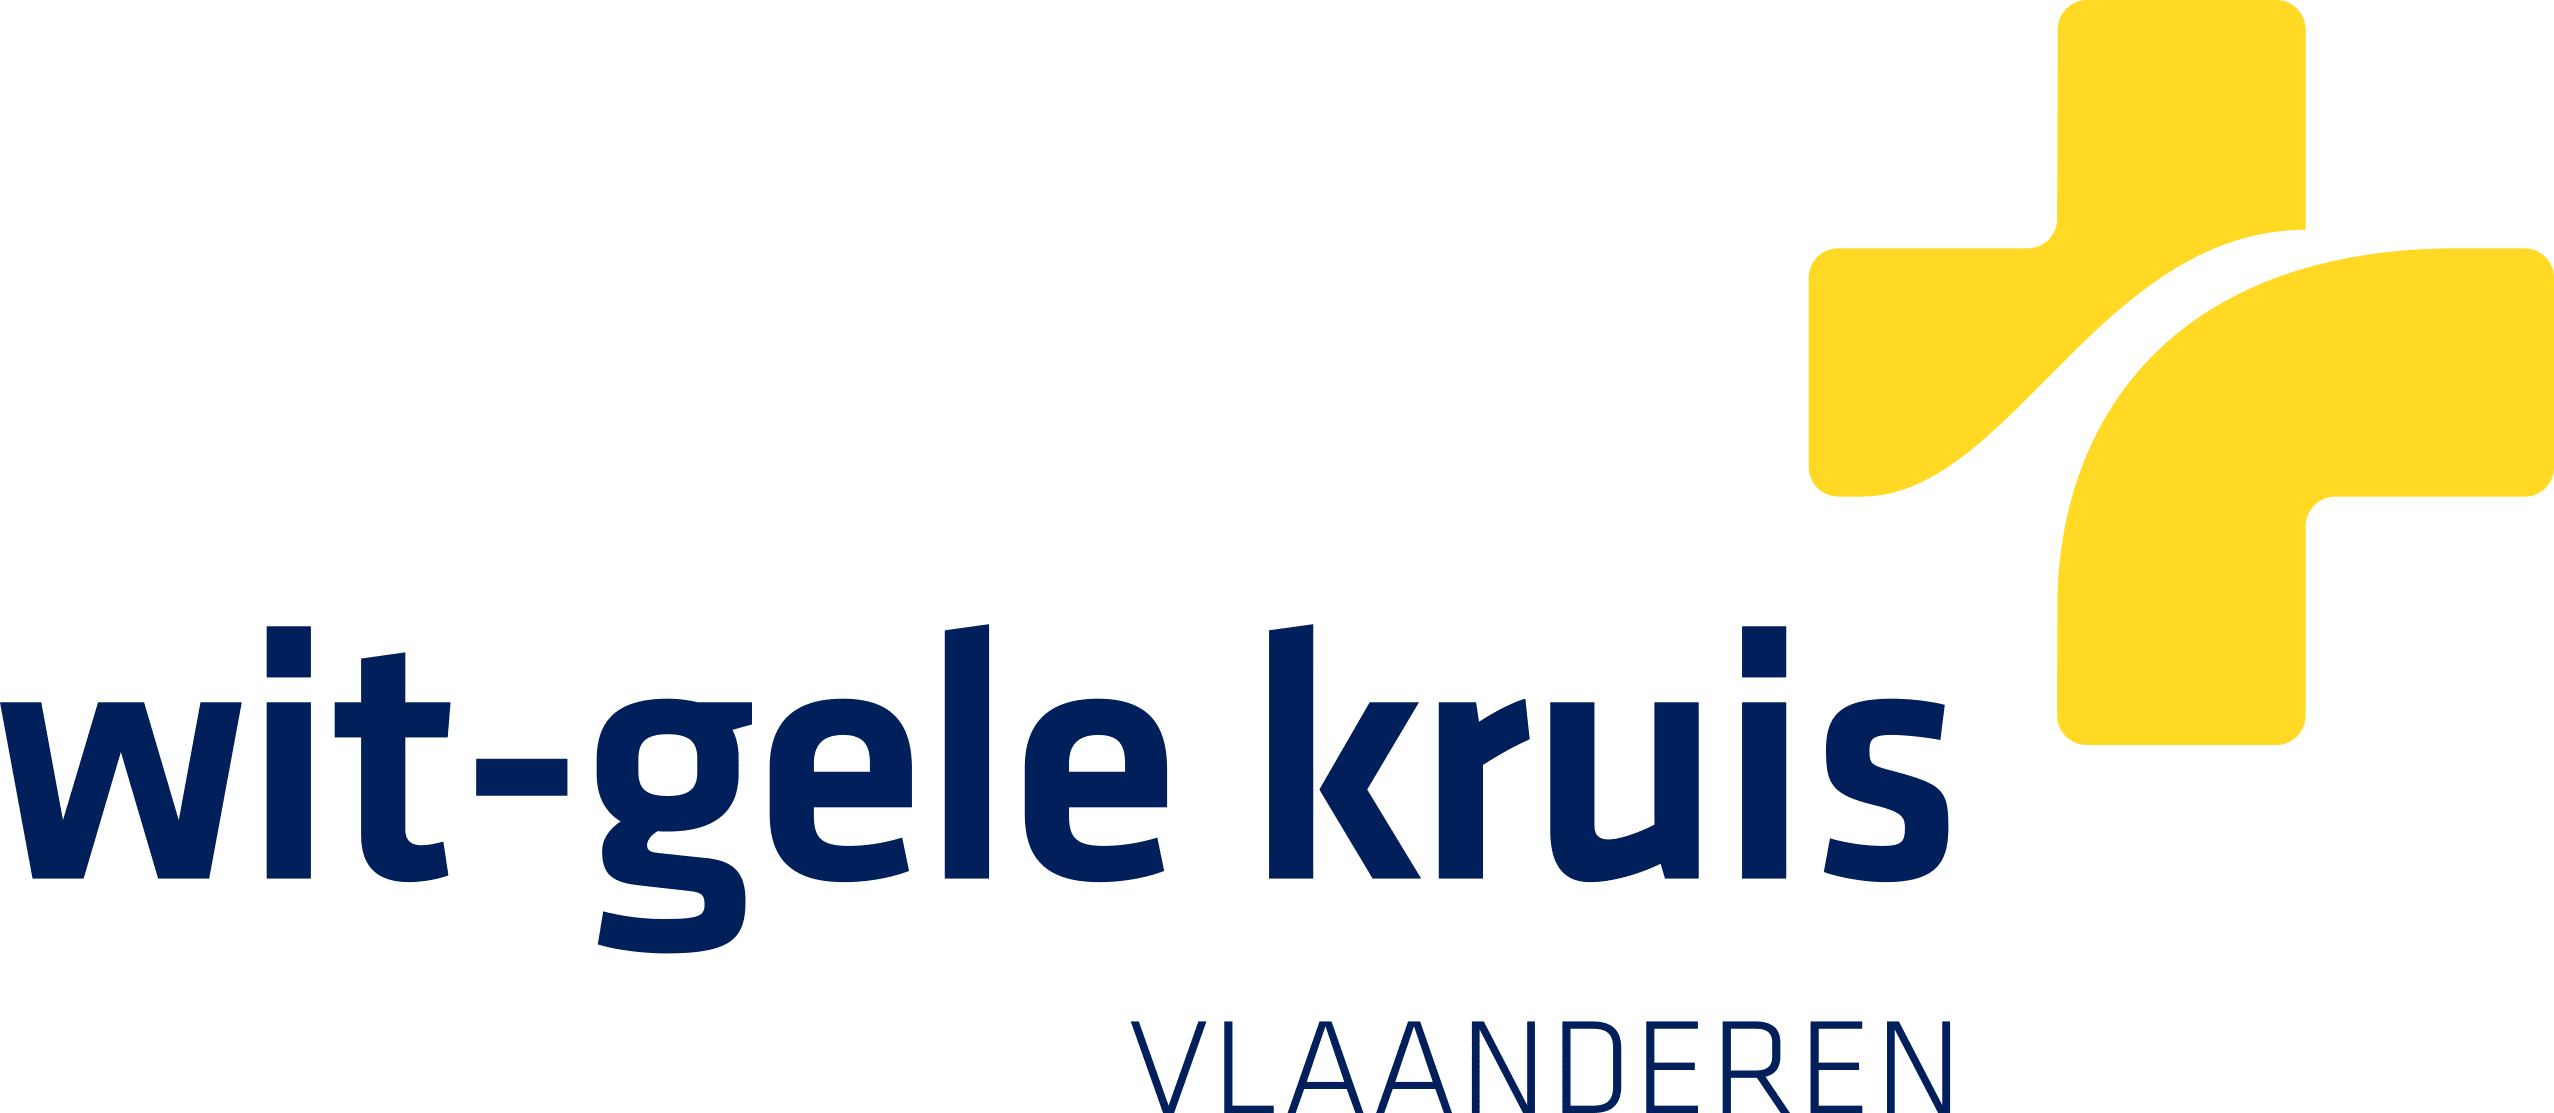 Wgk Vlaanderen Logo